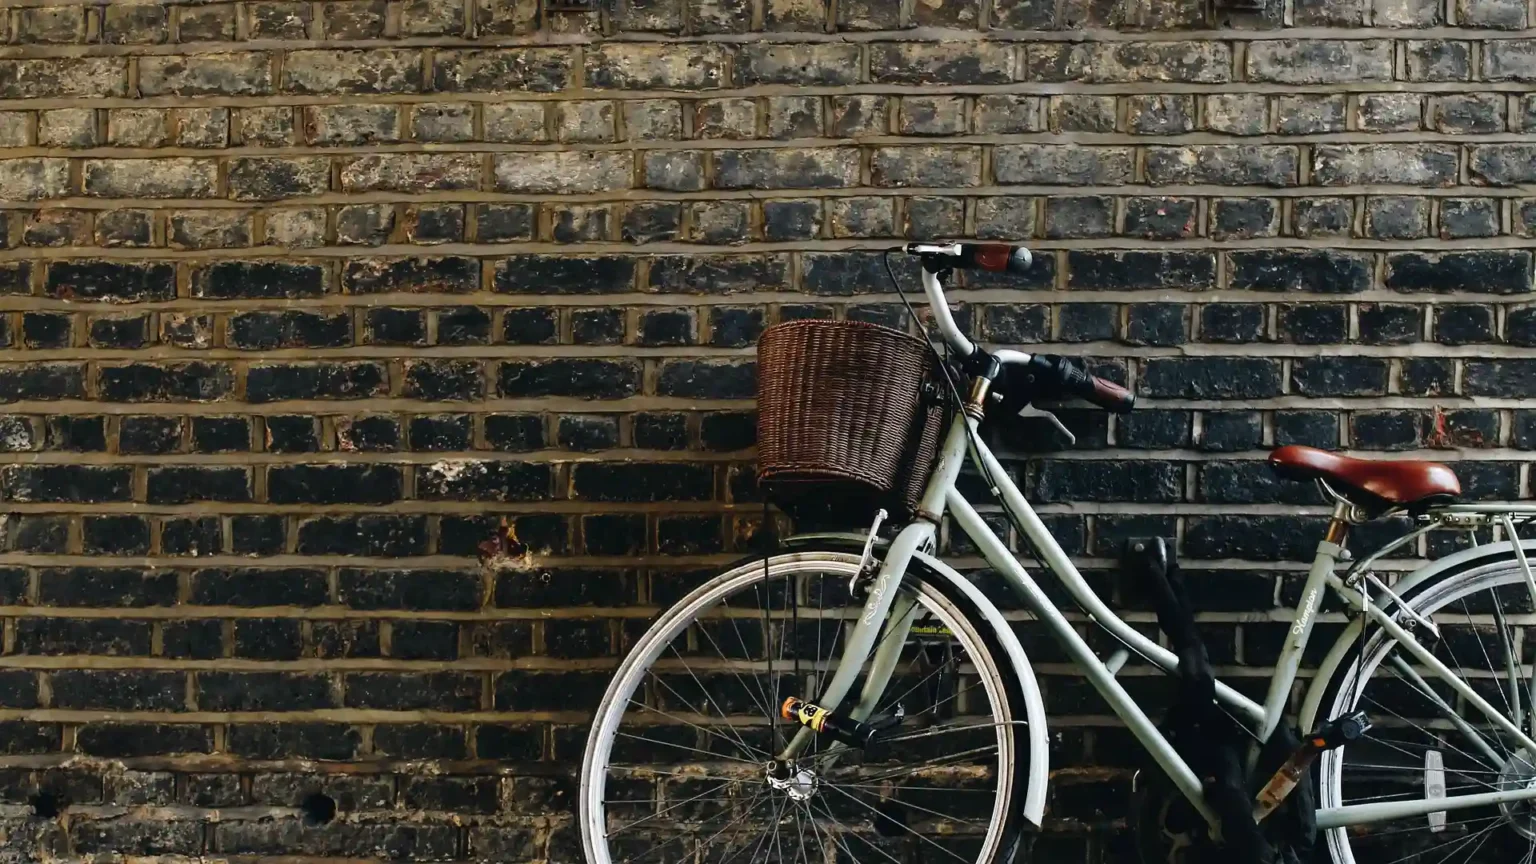 Nell'immagine si vede nella parte in basso a destra una bicicletta bianca con sella marrone e cestino attaccato al manubrio. Lo sfondo è un muro di mattoni grigi.